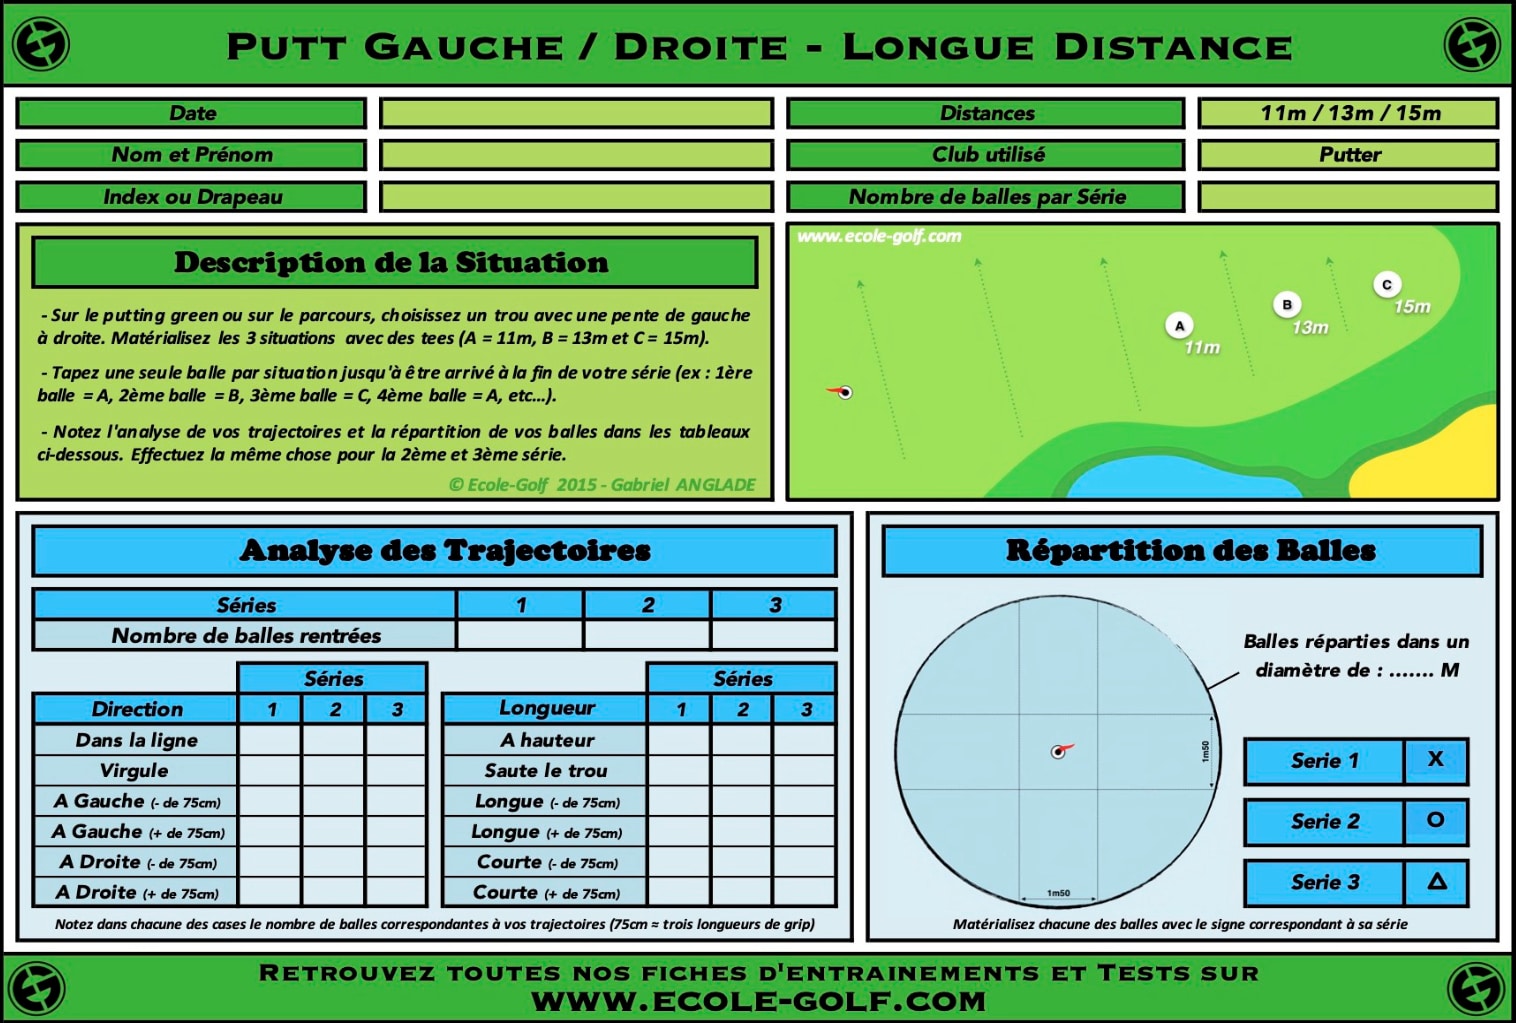 Putt Gauche Droite - Longue Distance